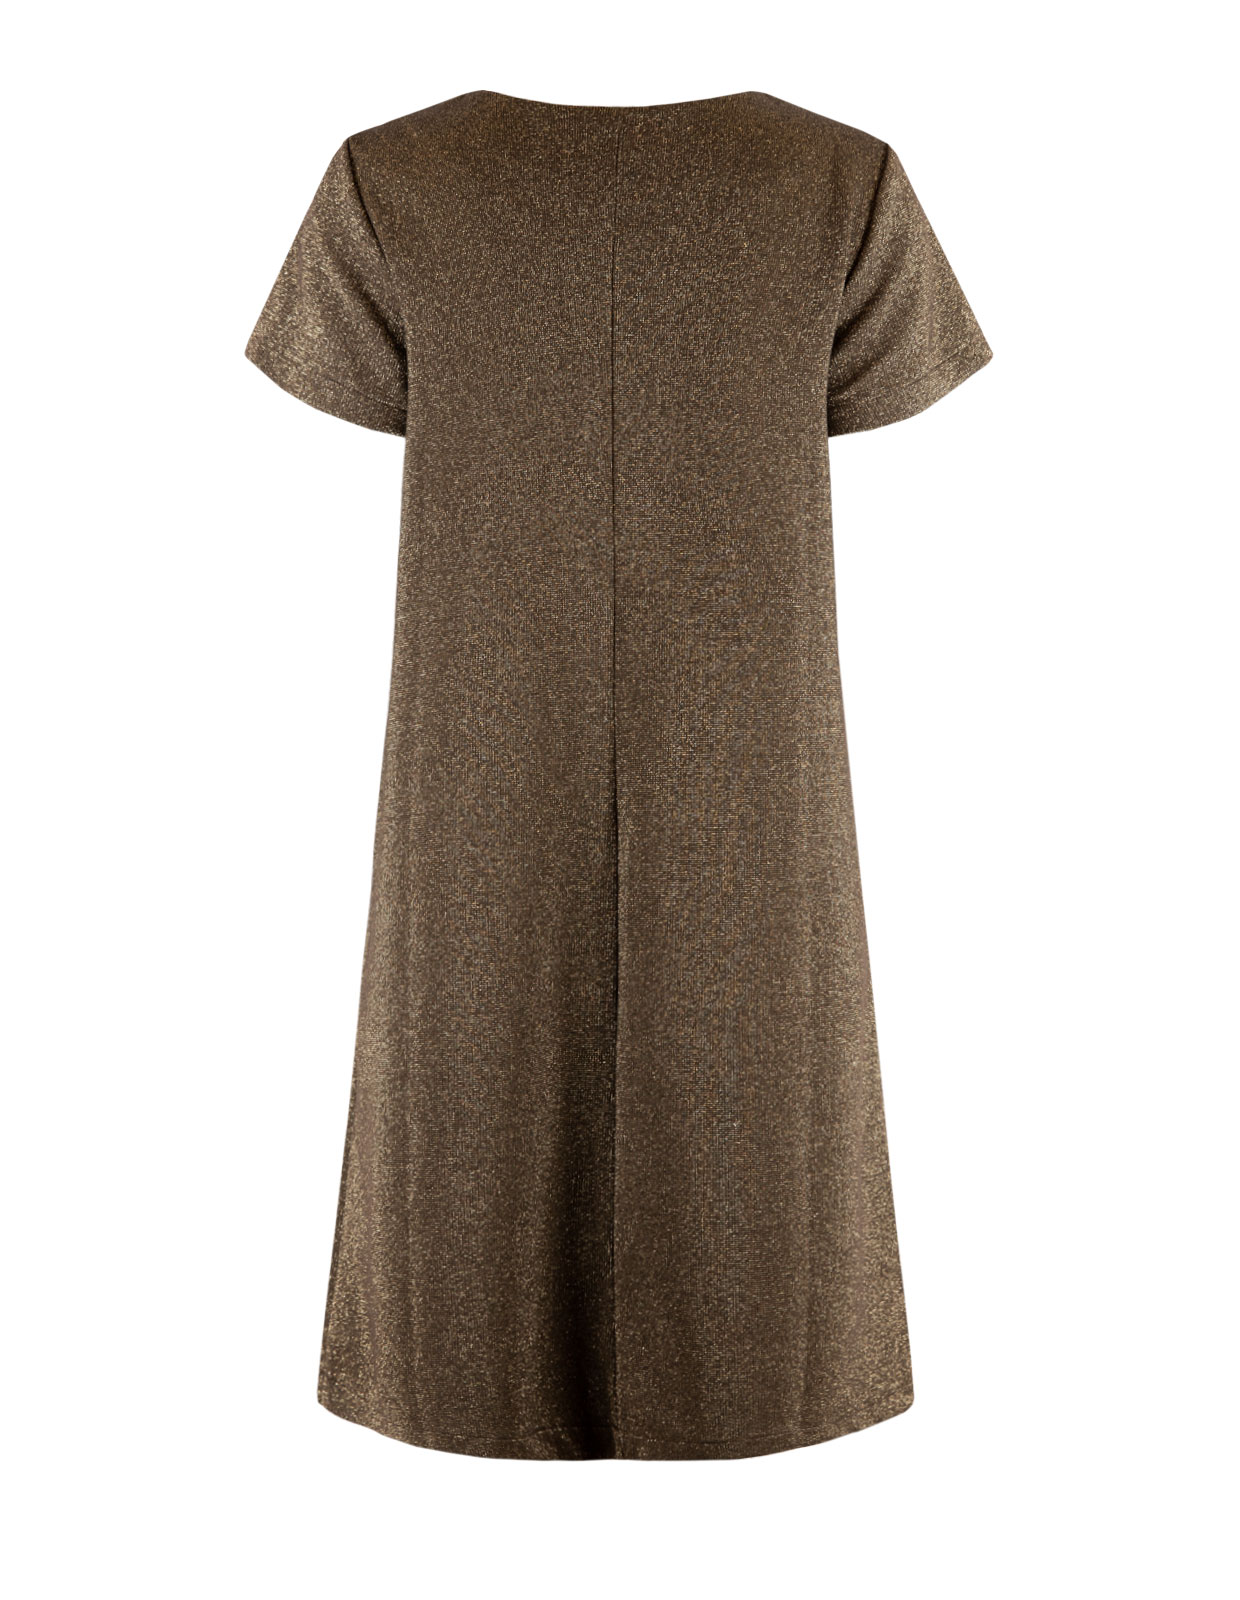 Teardrop Jersey Dress Brown Shimmer